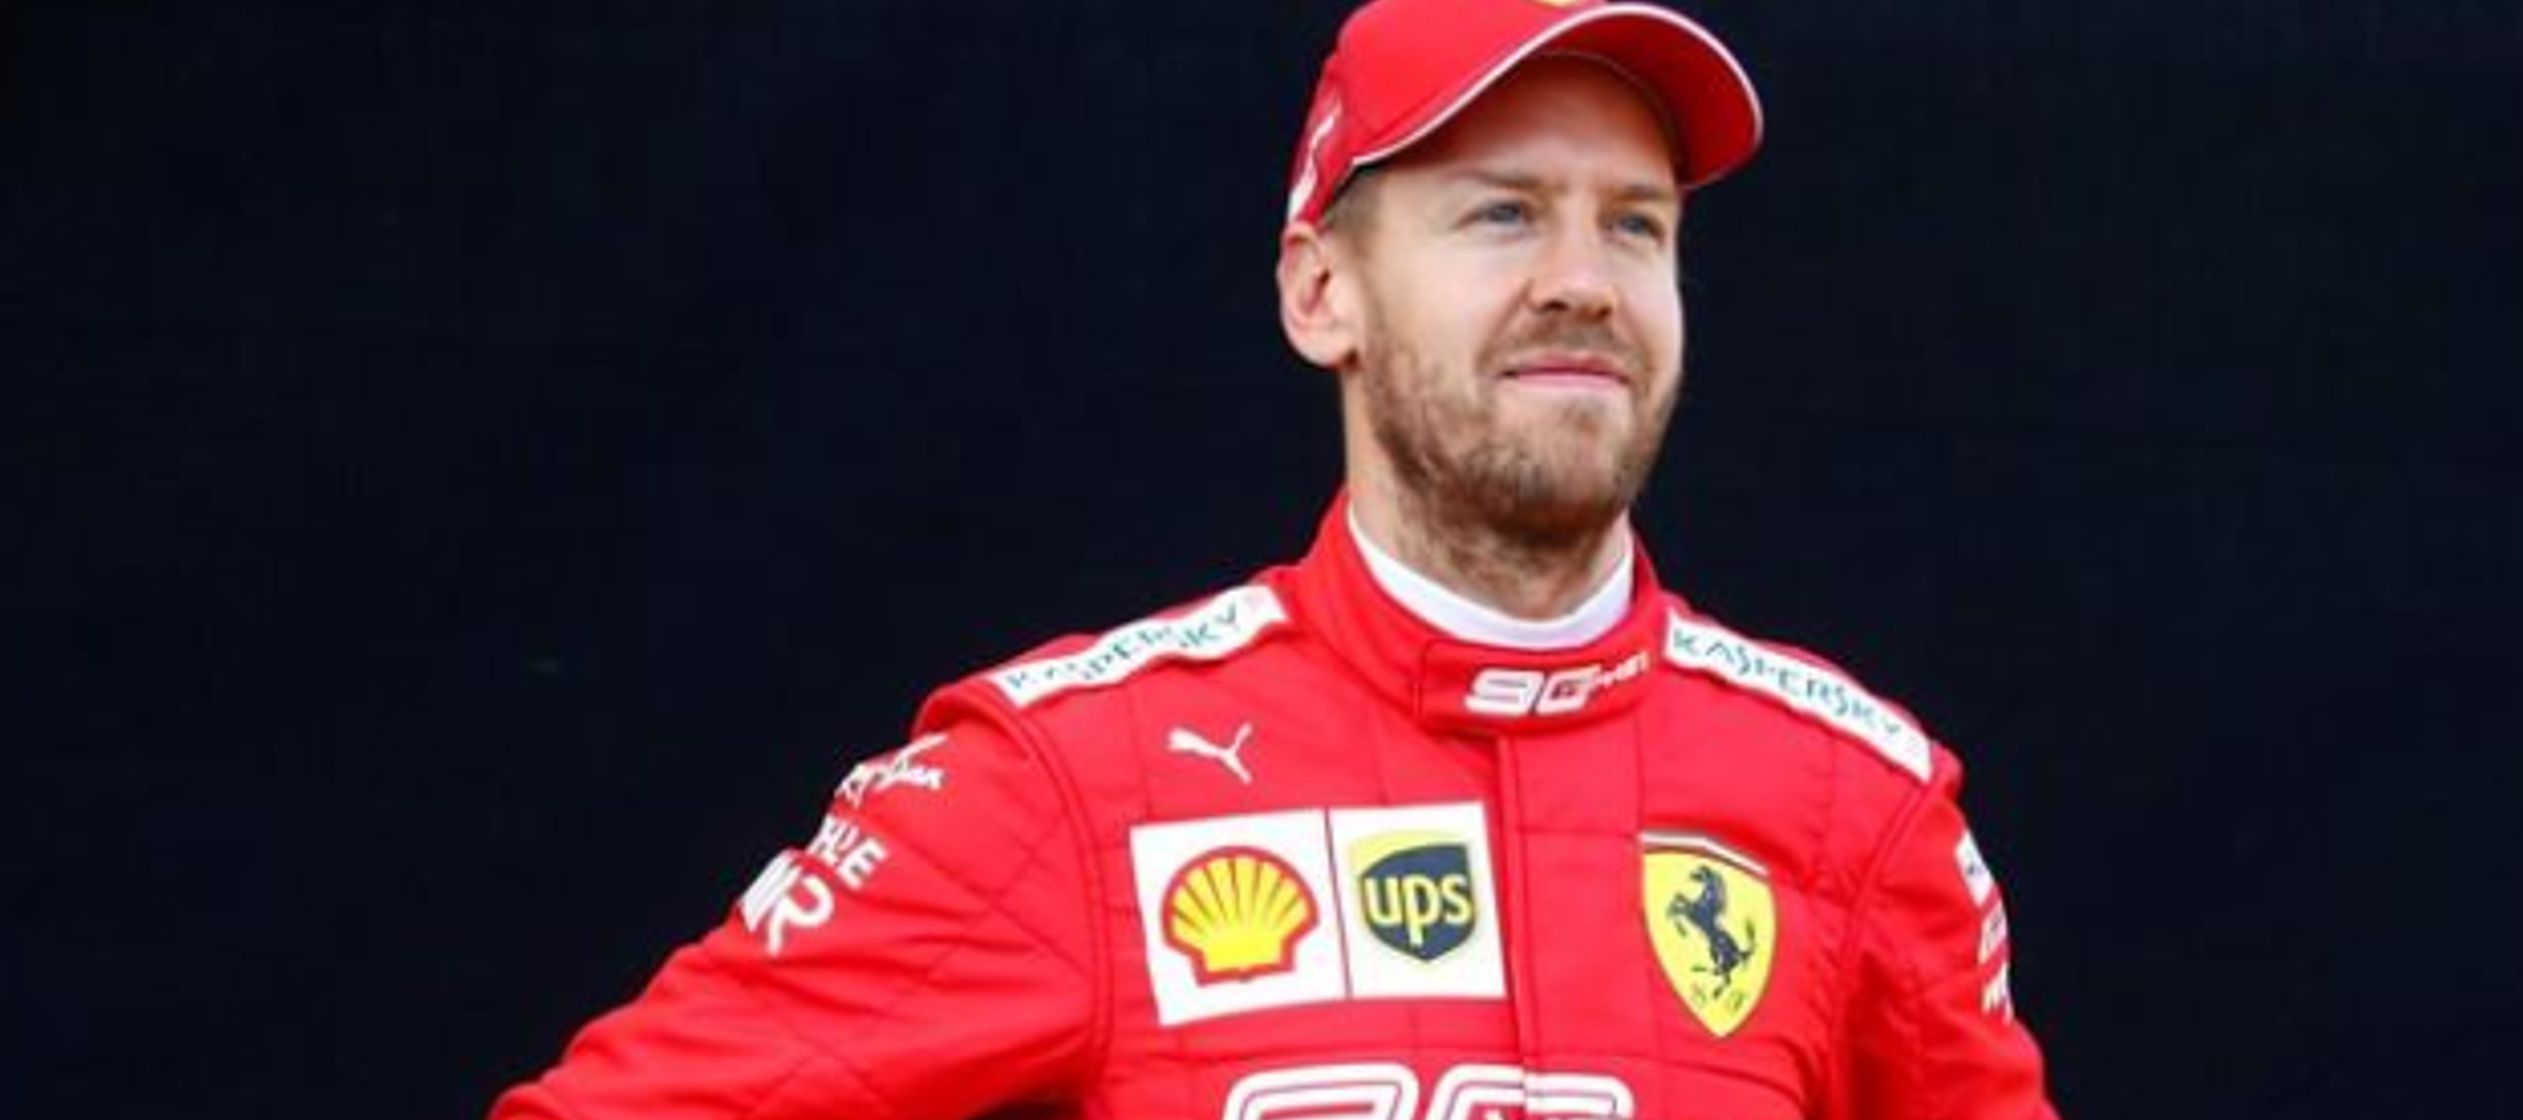 Vettel, que busca su tercera victoria consecutiva en el Gran Premio de Australia que abre la...